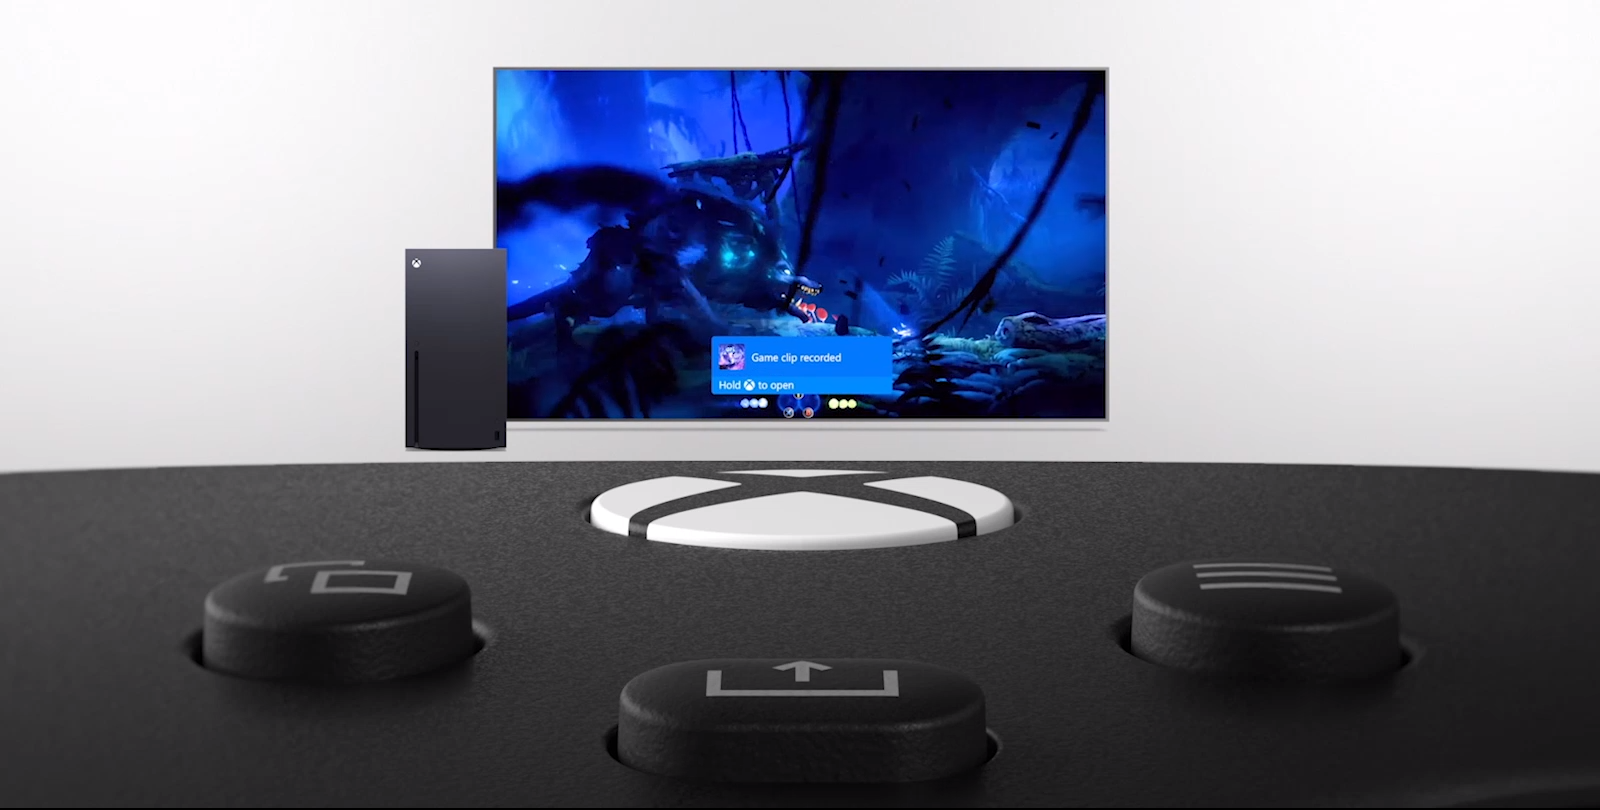 Tay cầm chơi game Xbox Series X Controller - Pulse Red tích hợp nút share chuyên dụng